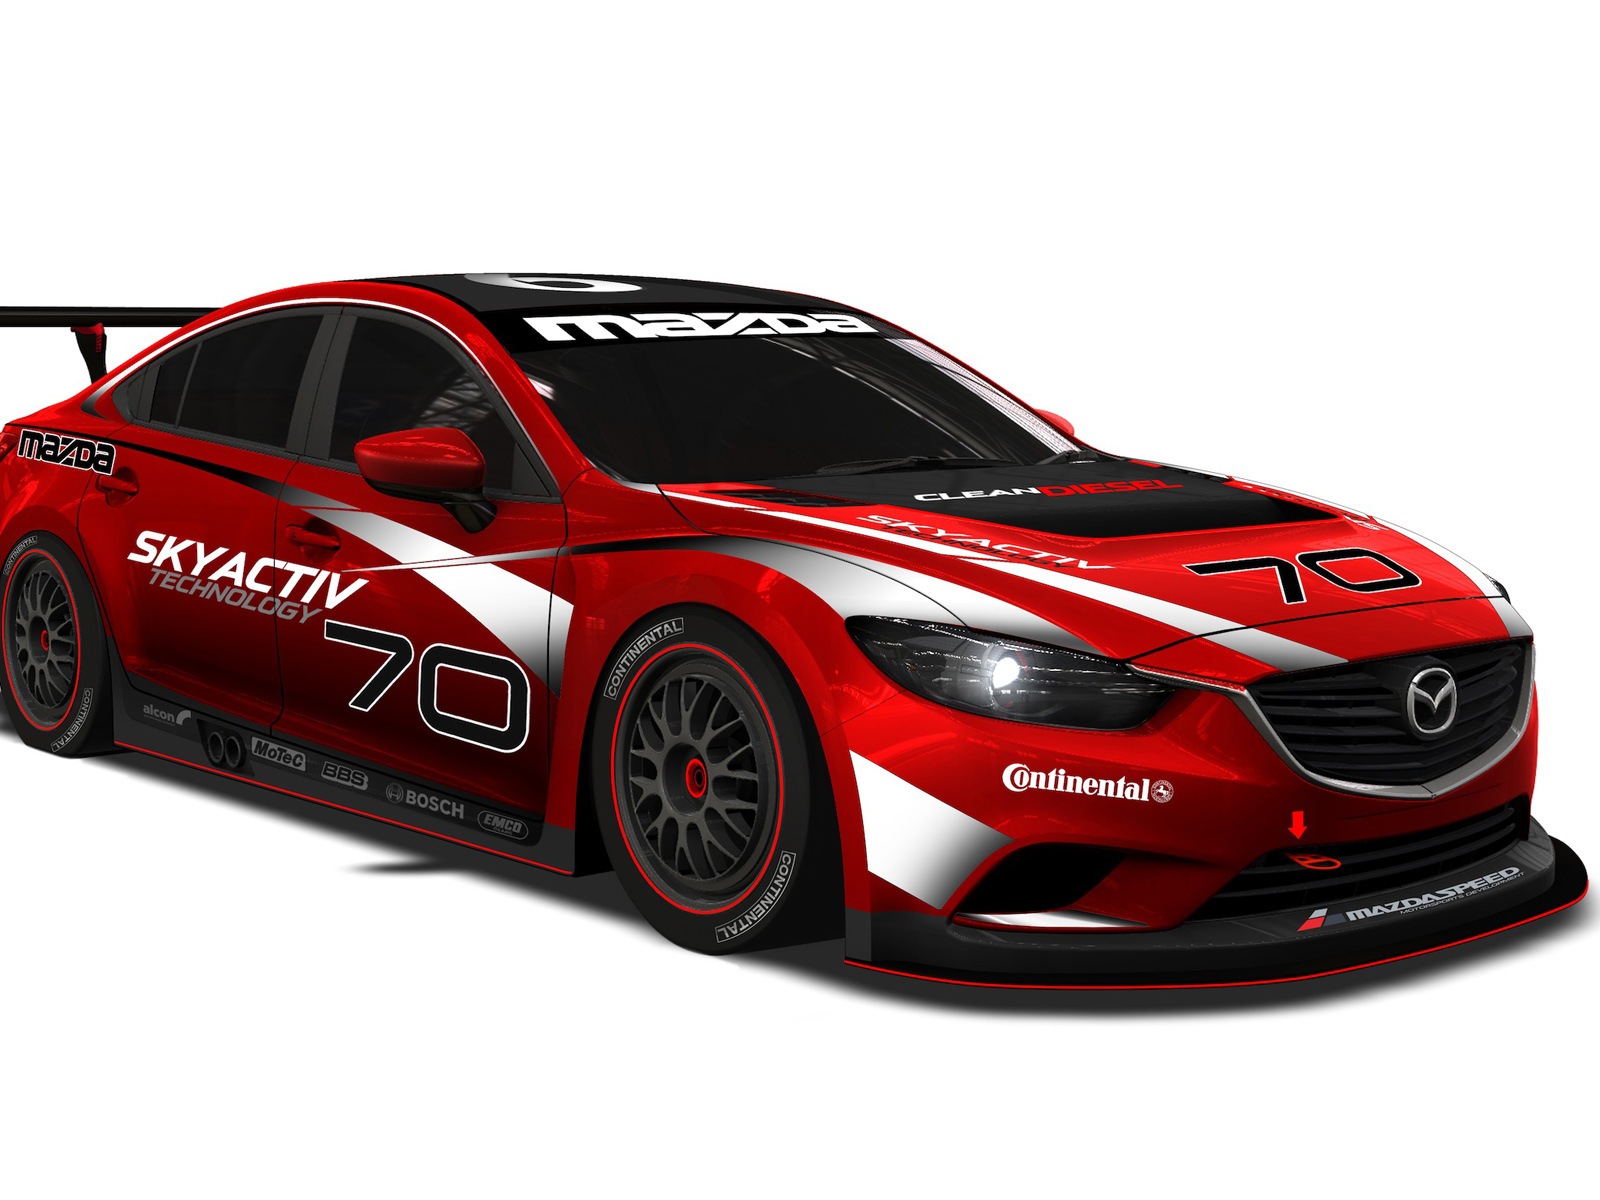 2013 Mazda 6 Skyactiv-D race car 马自达 高清壁纸10 - 1600x1200